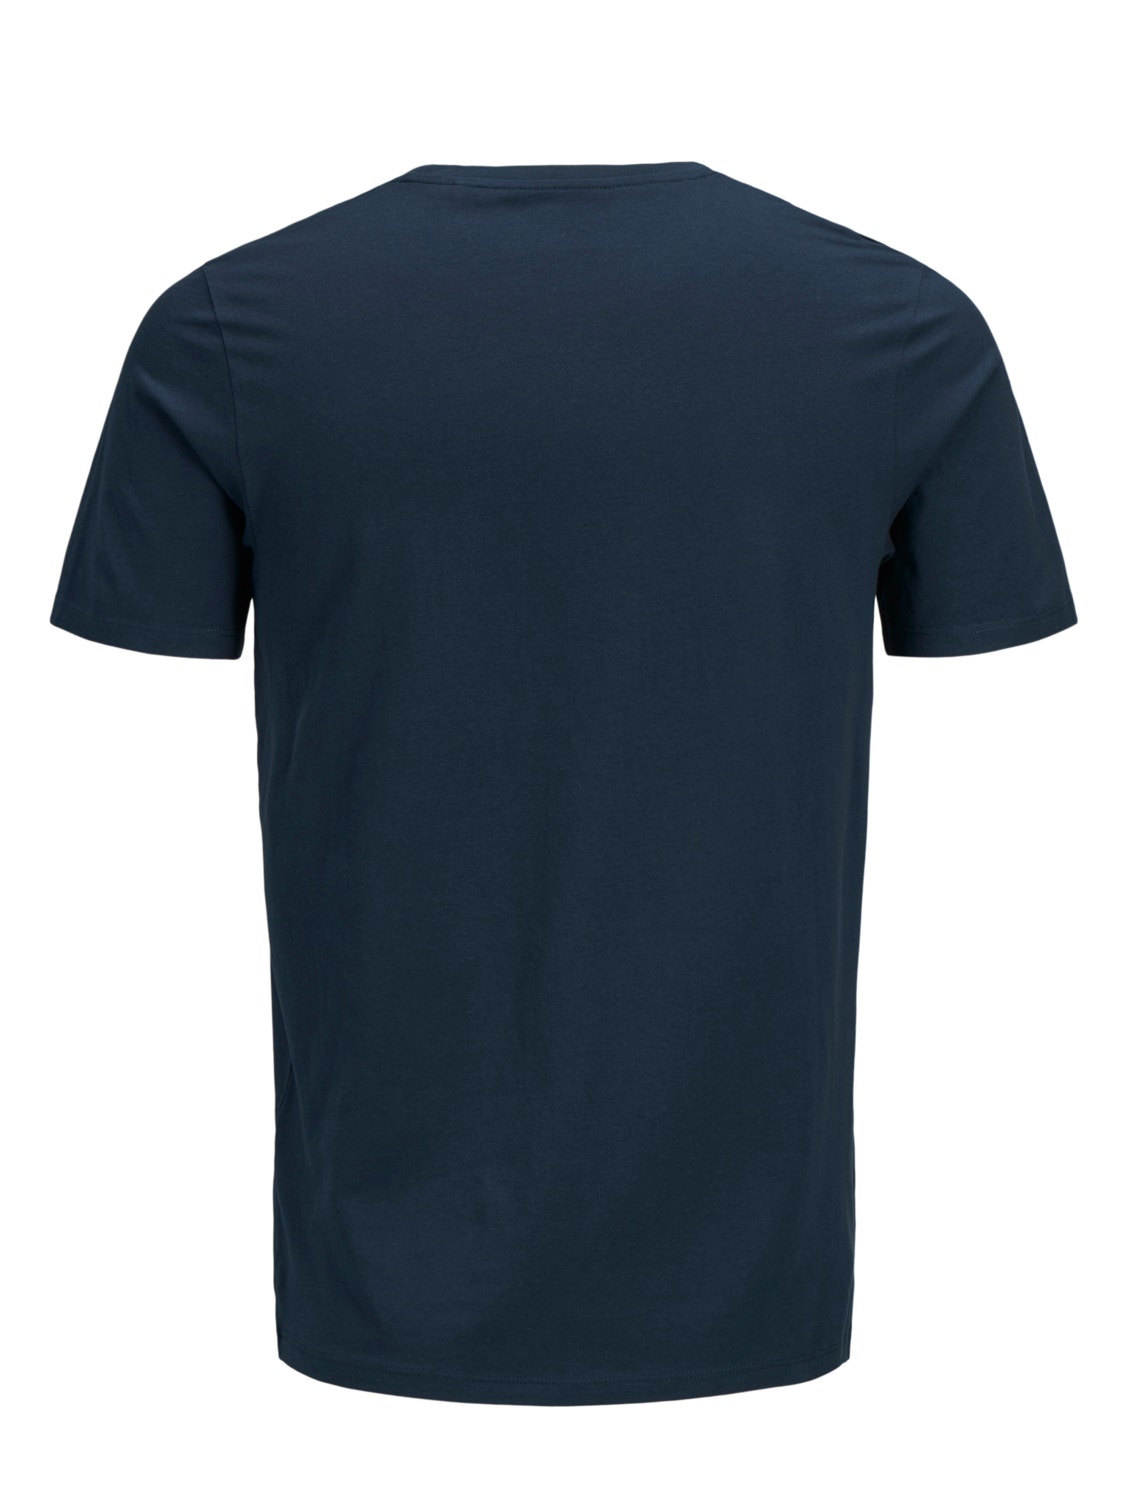 Jack & Jones Plus Size Logotipas Marškinėliai -Navy Blazer - 12184987